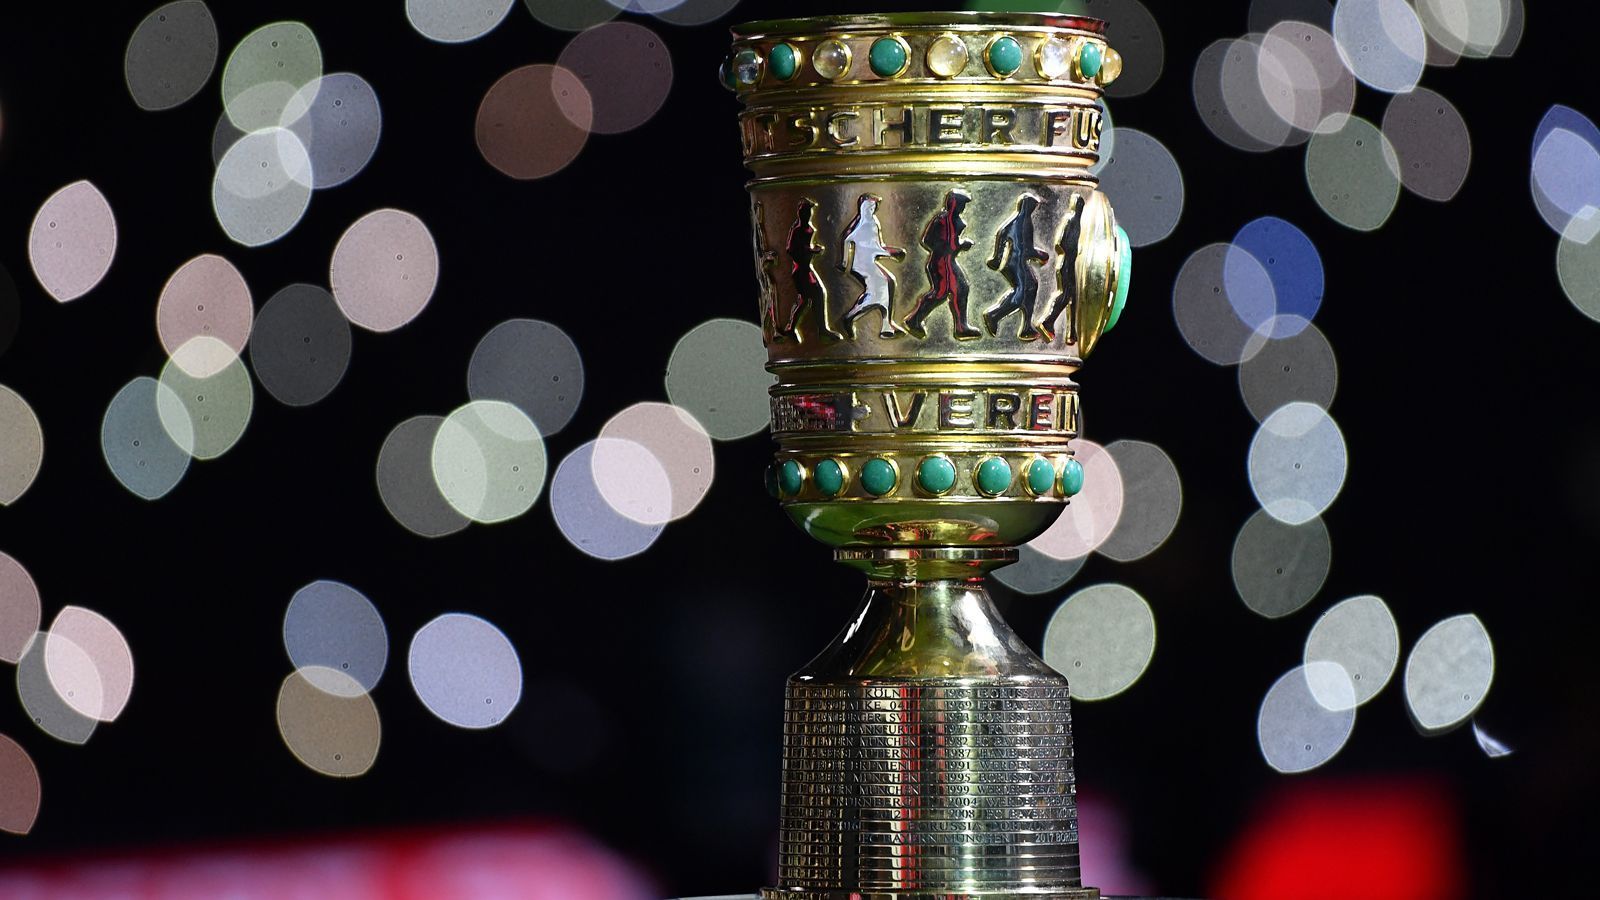 
                <strong>DFB-Pokal: Die Prämien für die Saison 2018/19</strong><br>
                Wie der "Kicker" berichtet, schüttet der DFB in der Pokal-Saison 2018/19 insgesamt 52 Millionen Euro an Prämien aus. ran.de zeigt, wie viel die Klubs in den unterschiedlichen Runden kassieren können. (Quelle: Kicker)
              